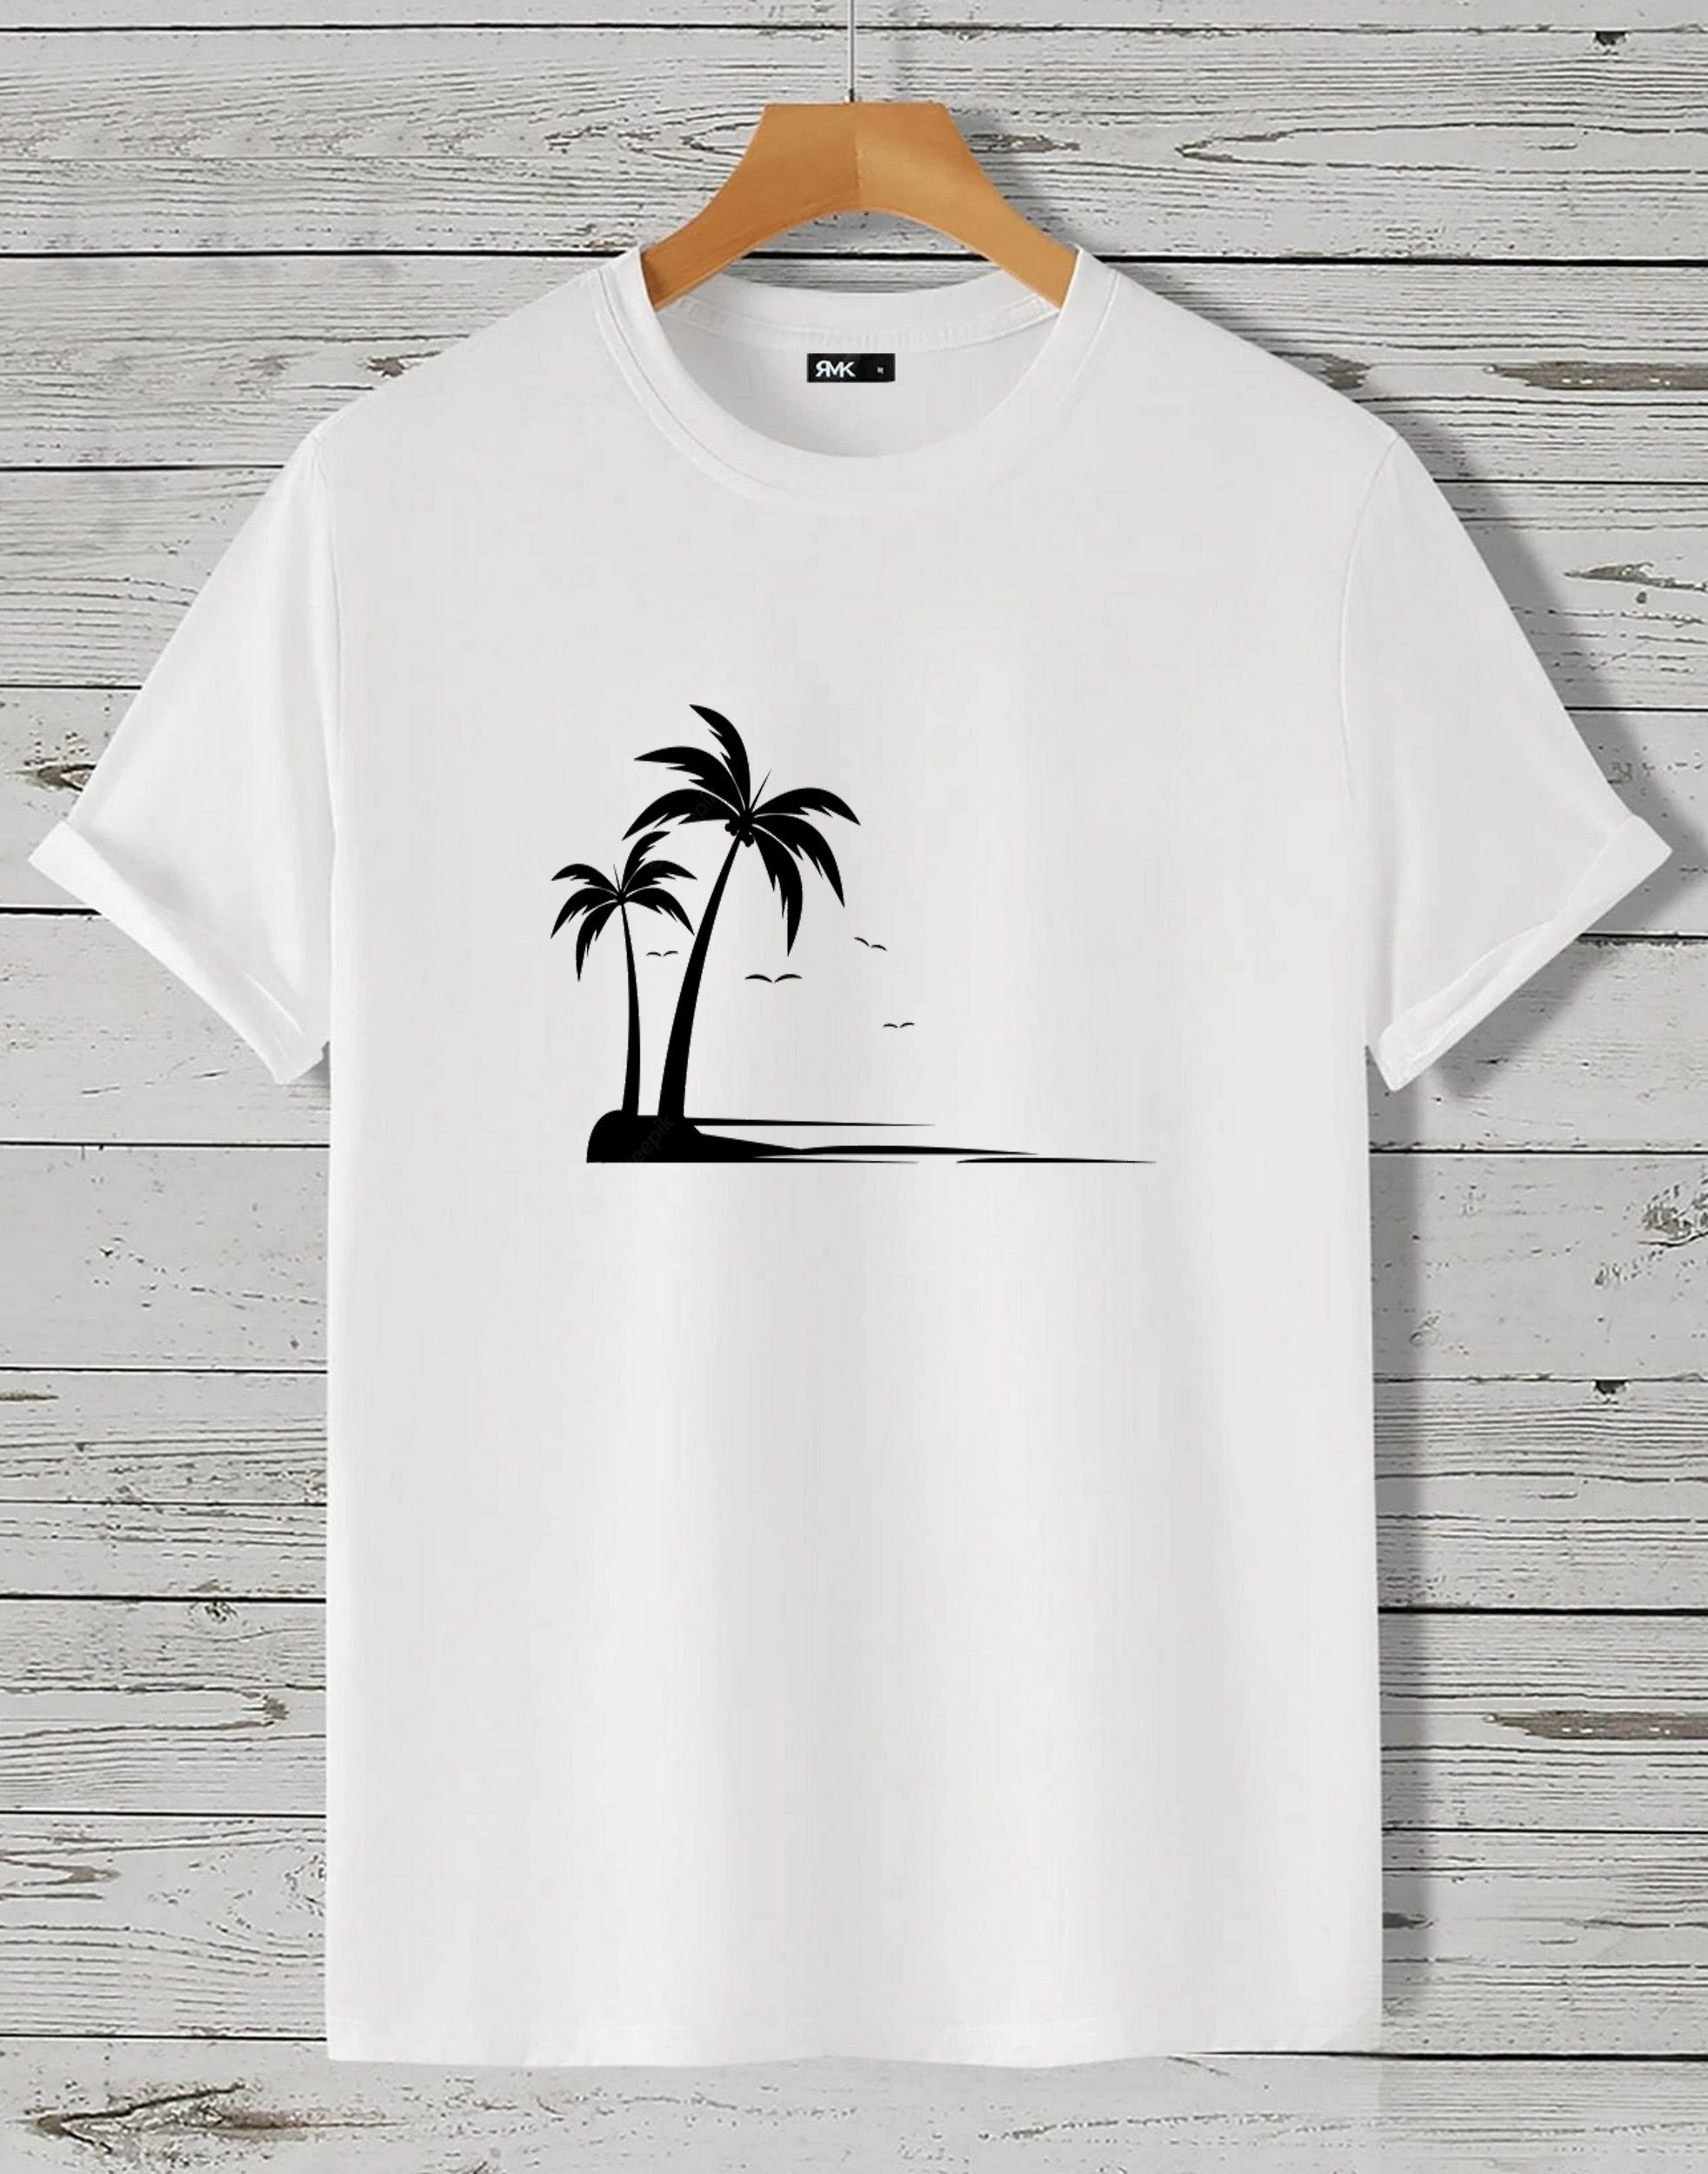 RMK T-Shirt Herren Insel The Rundhals Baumwolle Motiv aus Unifarbe, Beach" "Palme in Shirt kurzarm